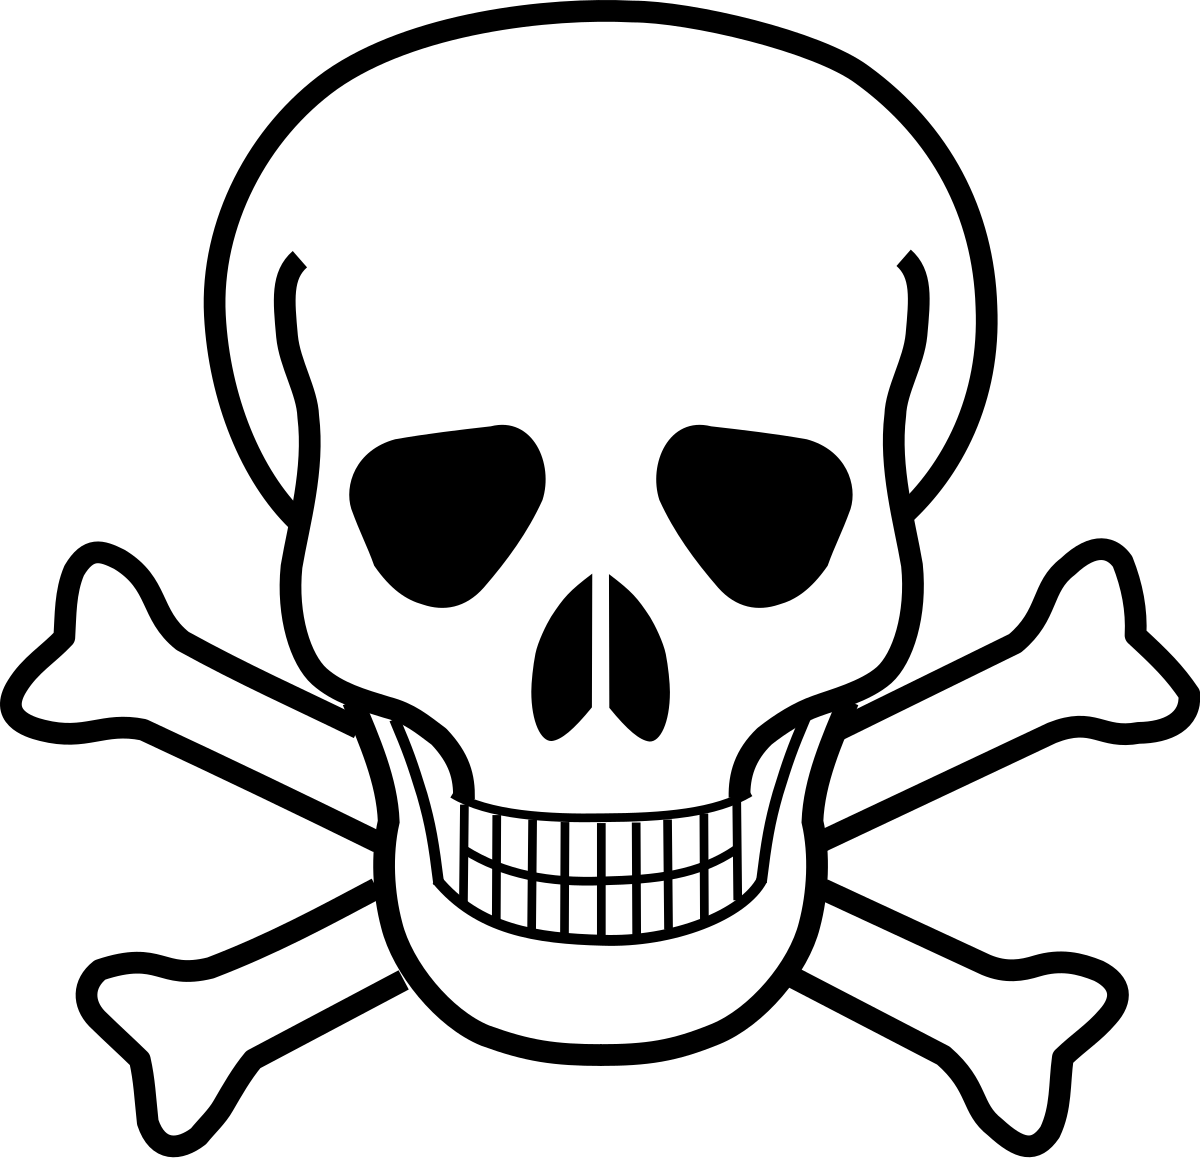 File:Death skull.svg - Wikipedia